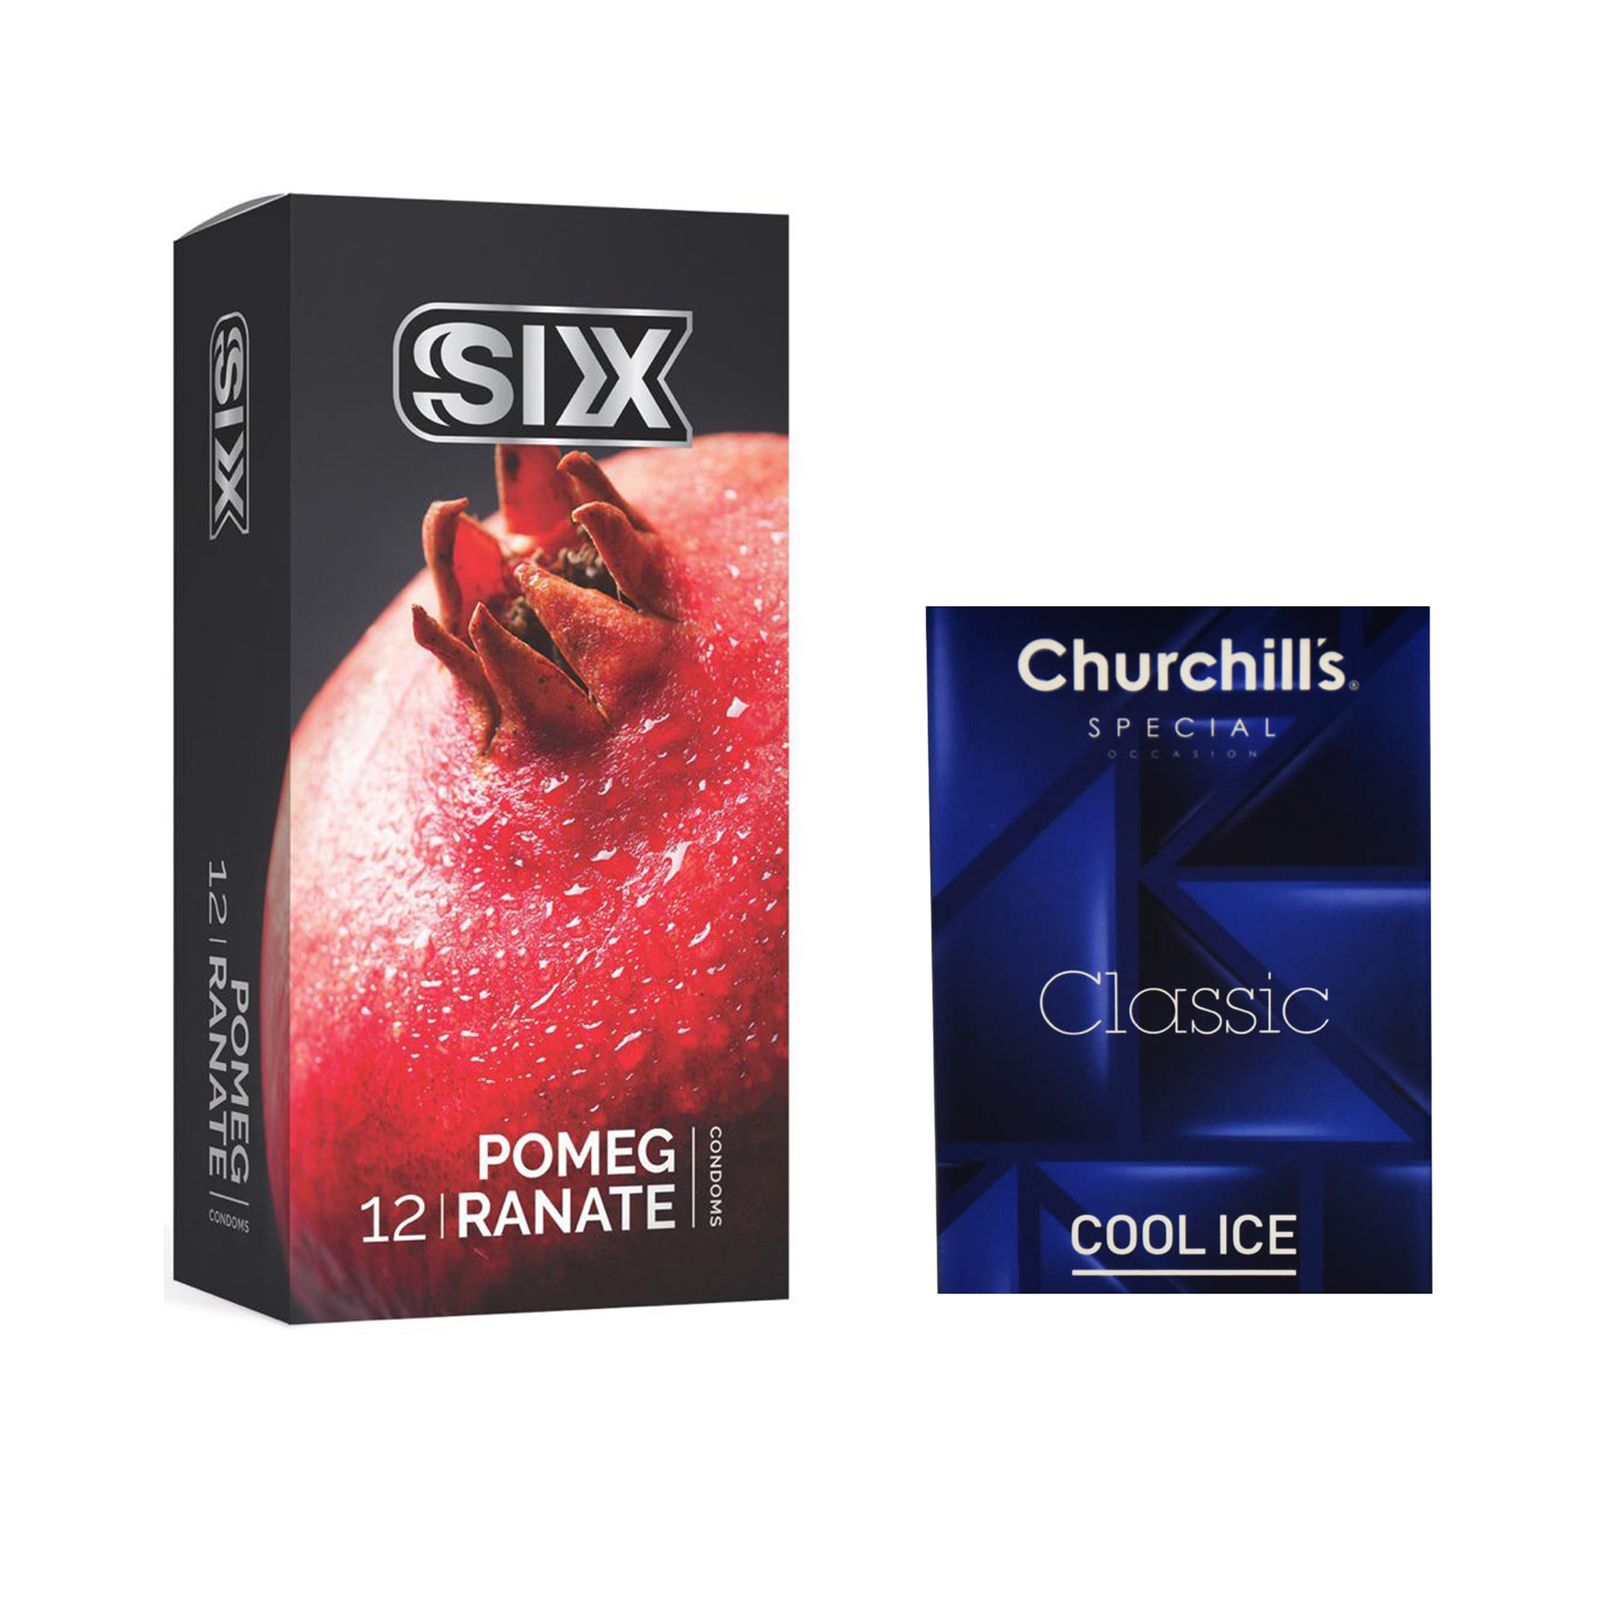 کاندوم سیکس مدل Pomegranate بسته 12 عددی به همراه کاندوم چرچیلز مدل Cool Ice بسته 3 عددی -  - 1